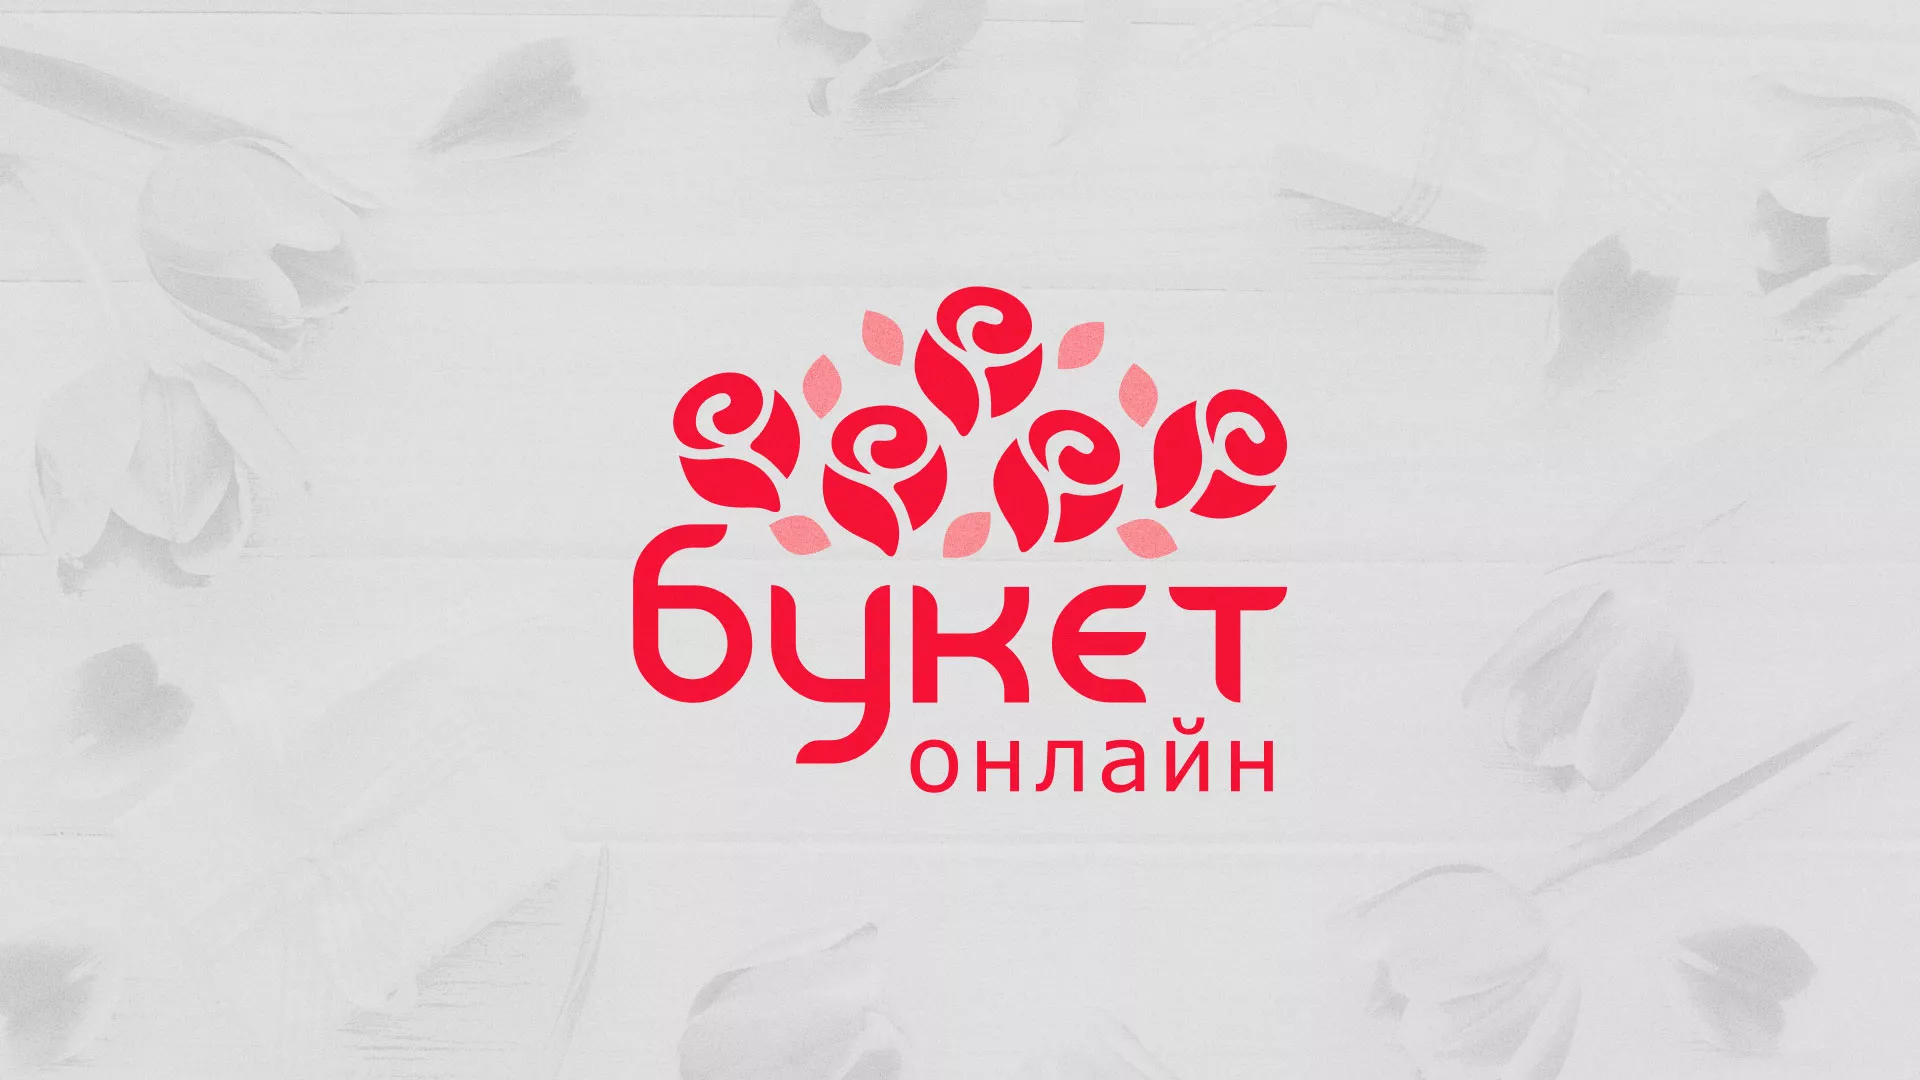 Создание интернет-магазина «Букет-онлайн» по цветам в Узловой